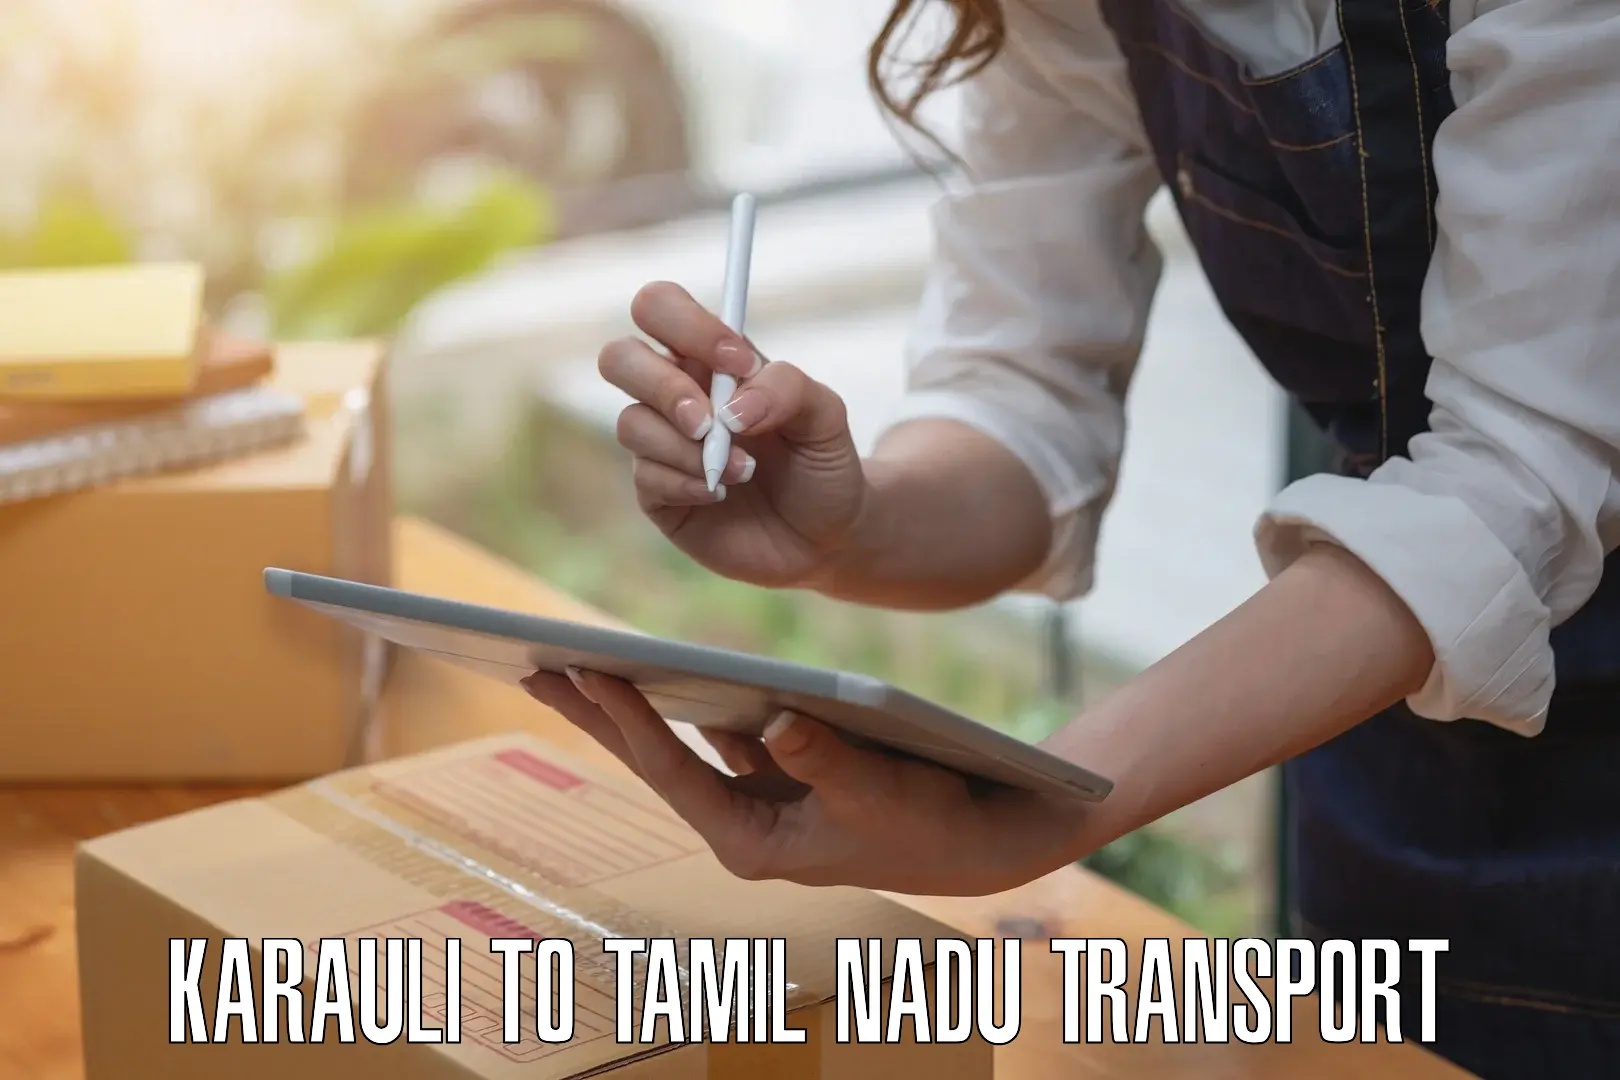 Two wheeler parcel service Karauli to Tamil Nadu